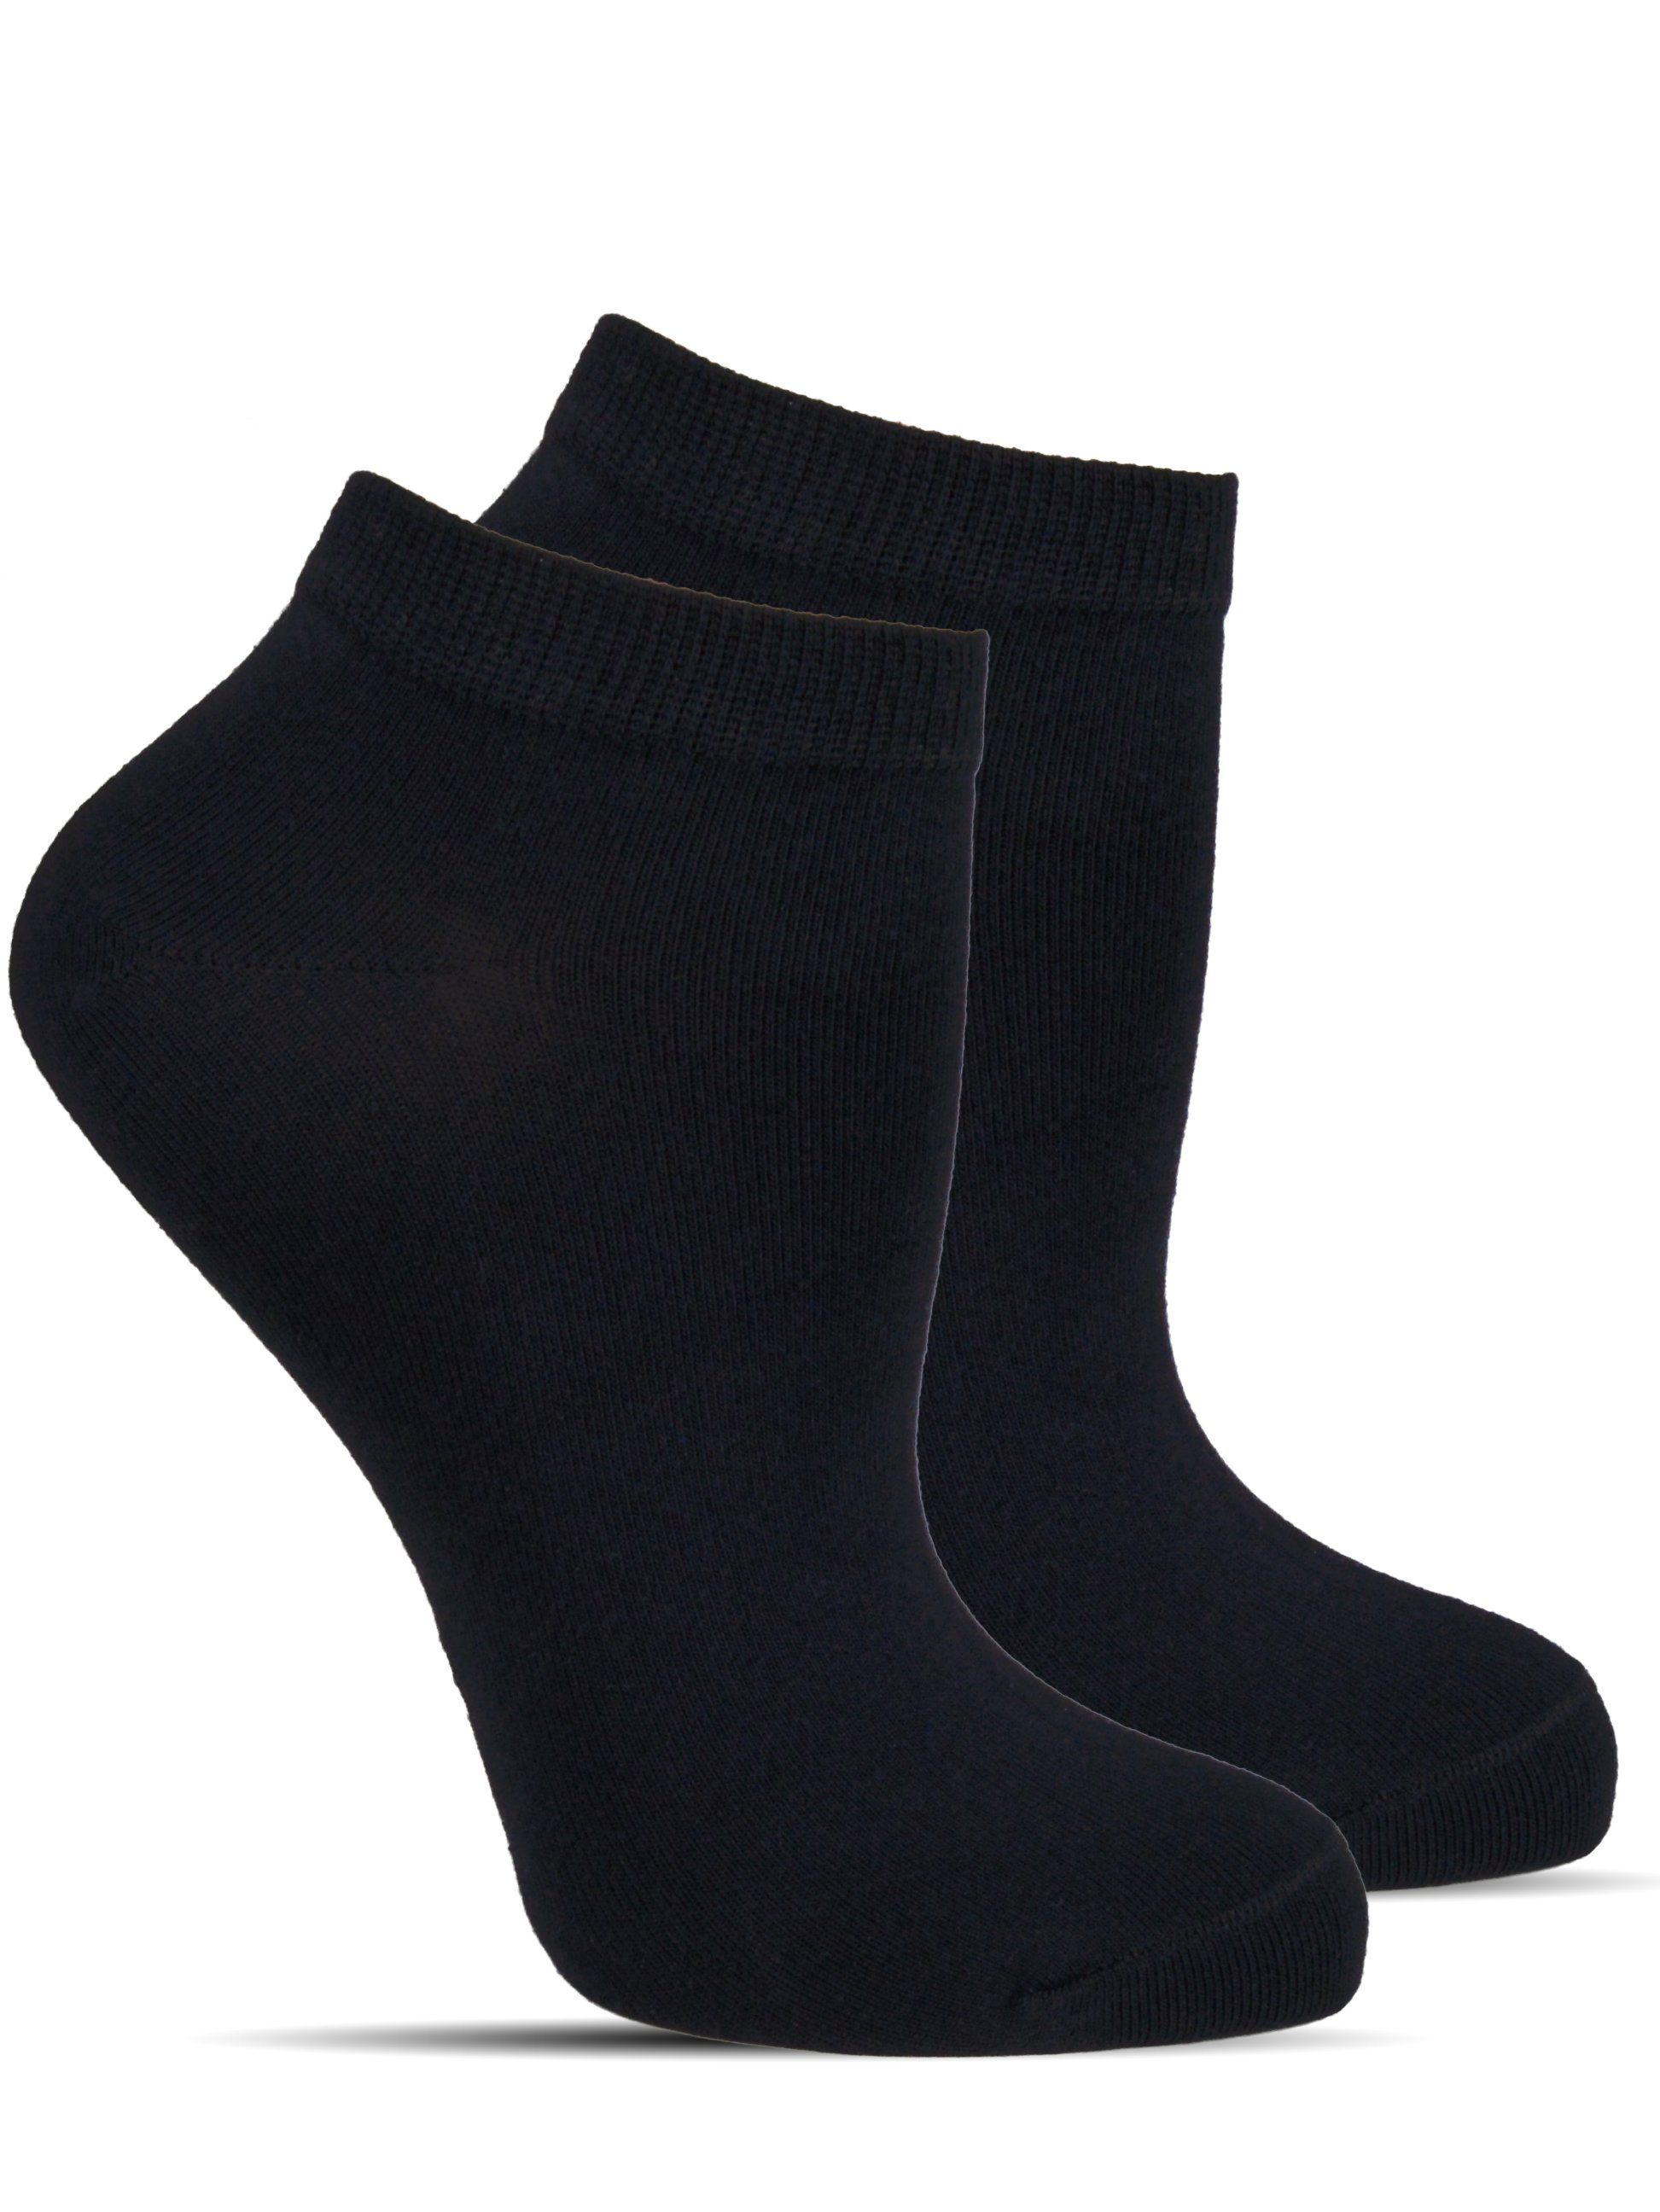 portofrei 12 Paar Damen Sneaker Socken schwarz 80% Baumwolle mit  5% Elasthan 